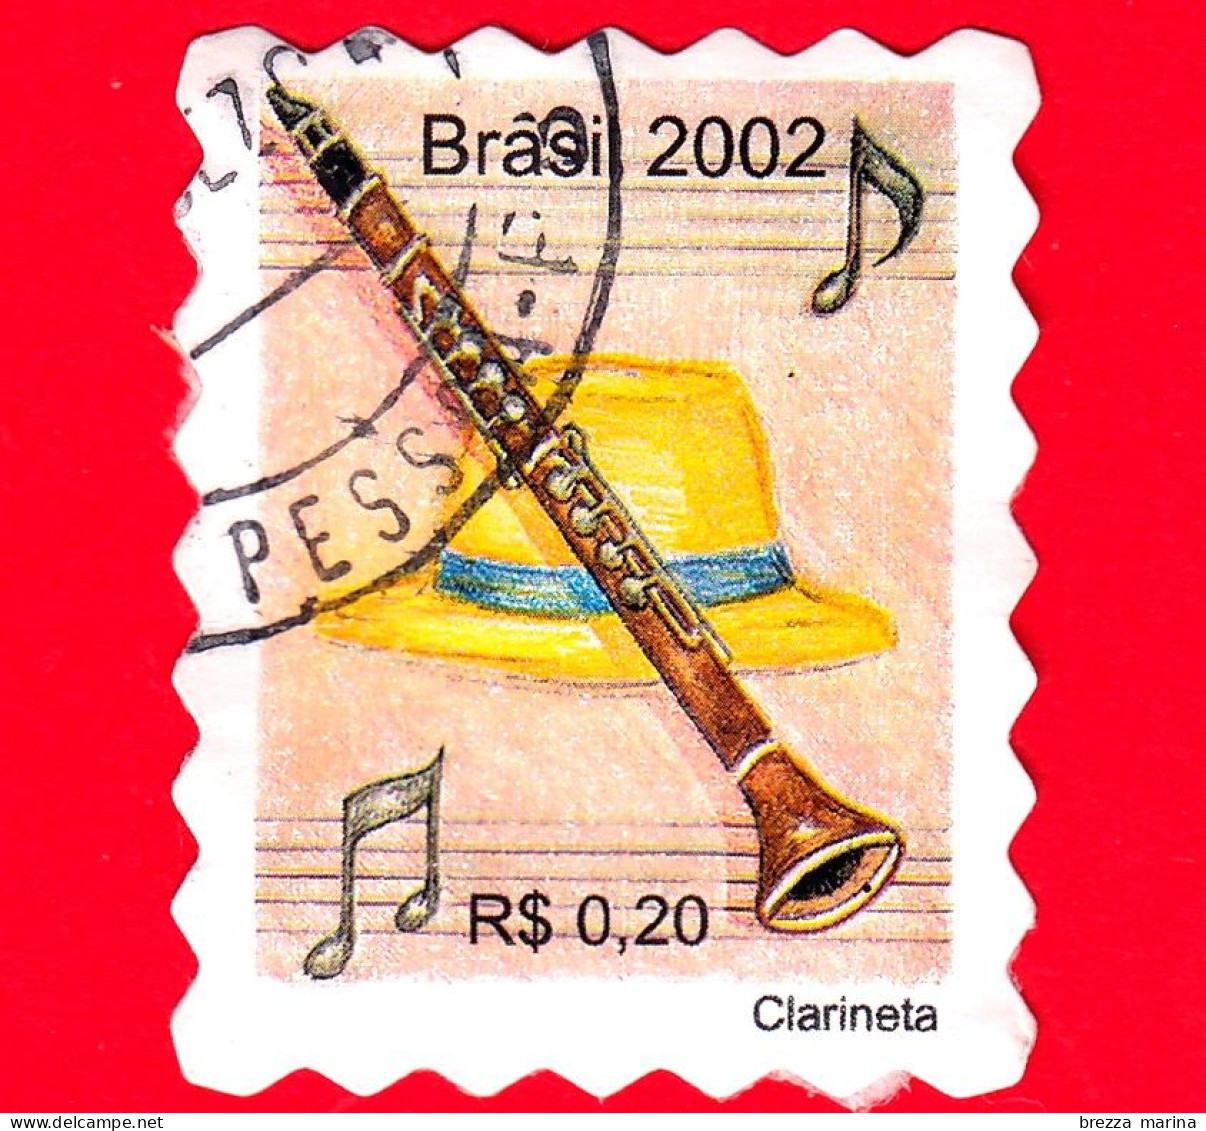 BRASILE - Usato - 2002 - Strumenti Musicali - Clarinetto - Clarineta  - 0.20 - Gebraucht